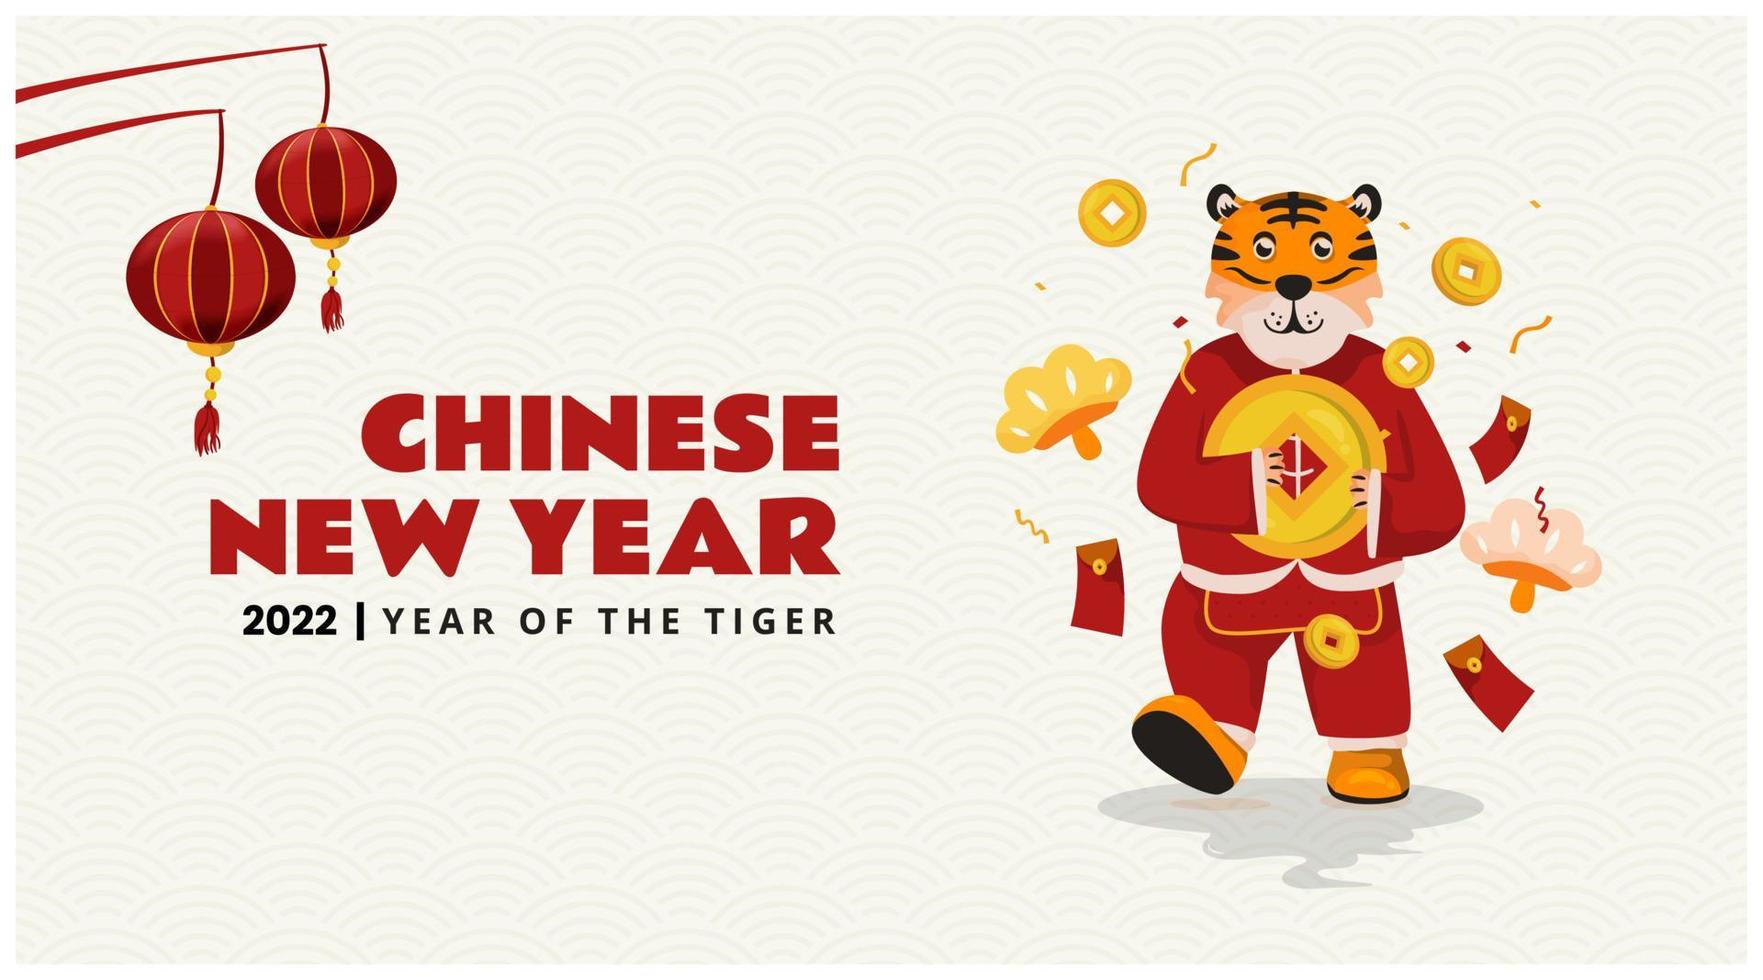 año nuevo chino 2022 con lindo personaje de tigre en plantilla de banner vector